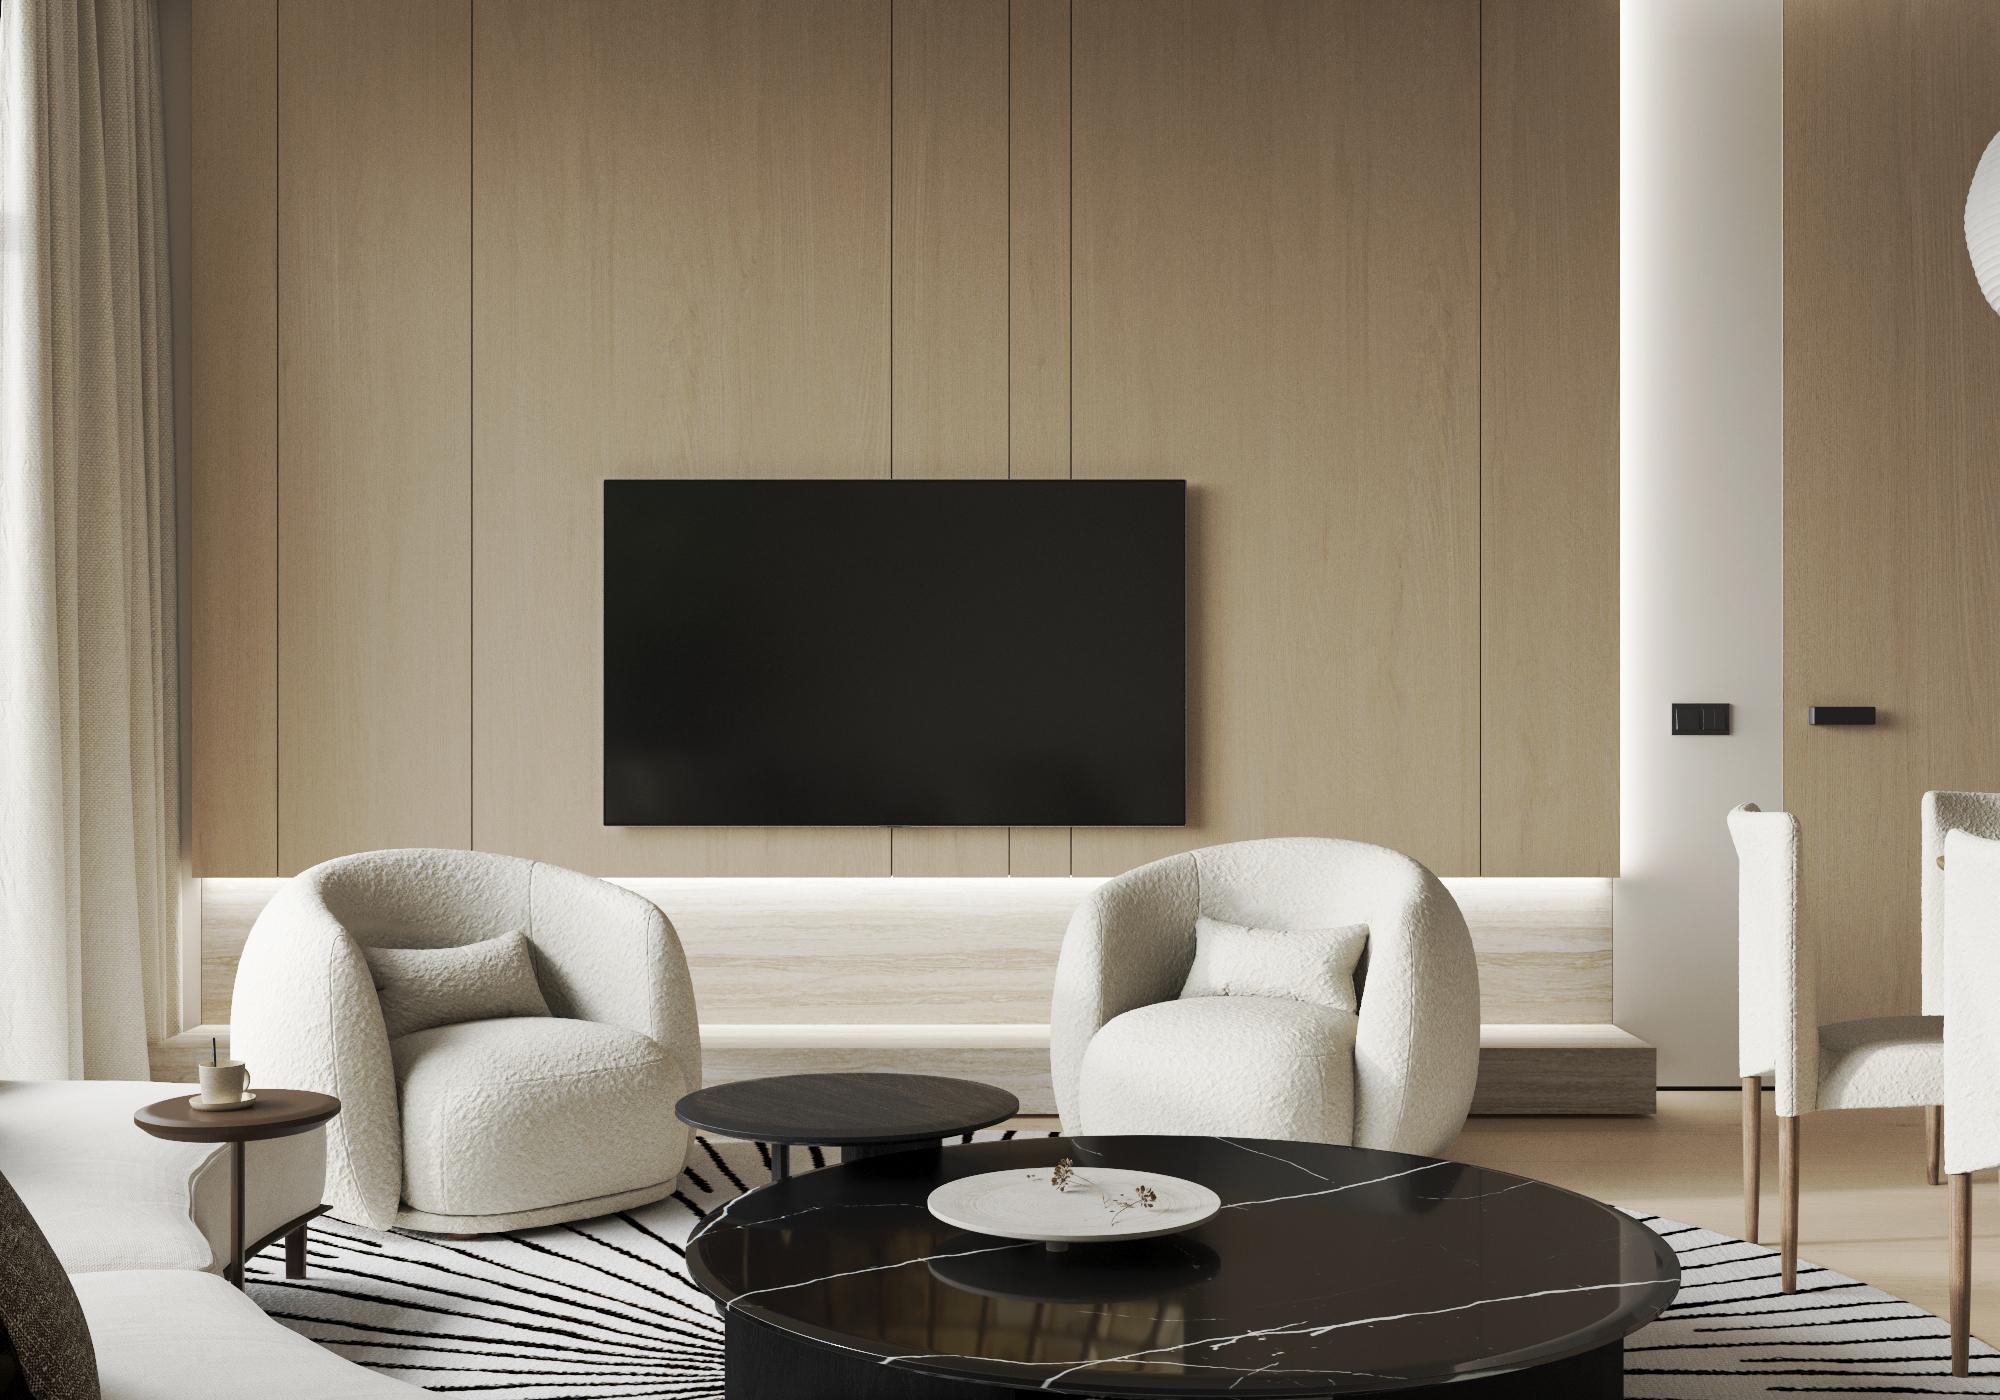 Интерьер гостиной cтеной с телевизором, телевизором на рейках, телевизором на стене и керамогранитом на стену с телевизором